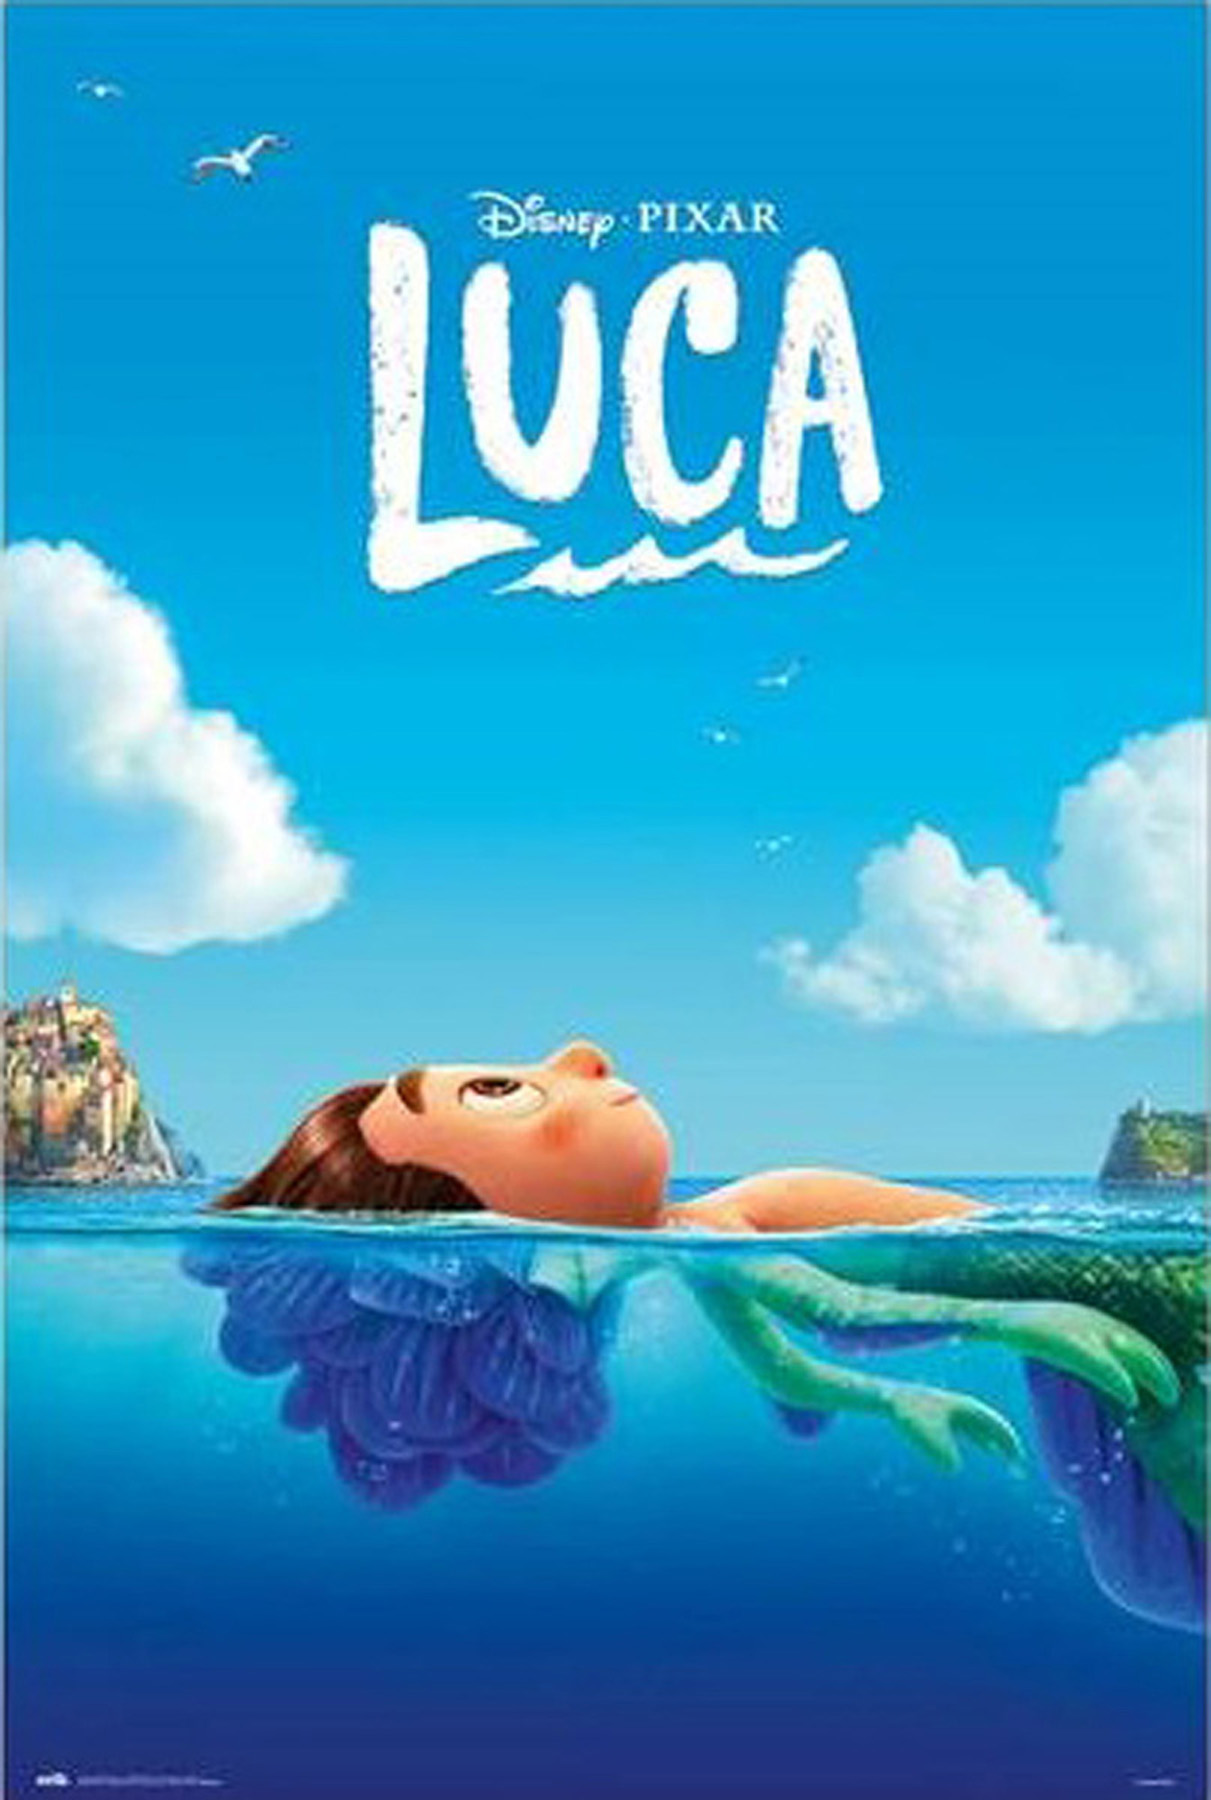 Disney - Pixar - Luca